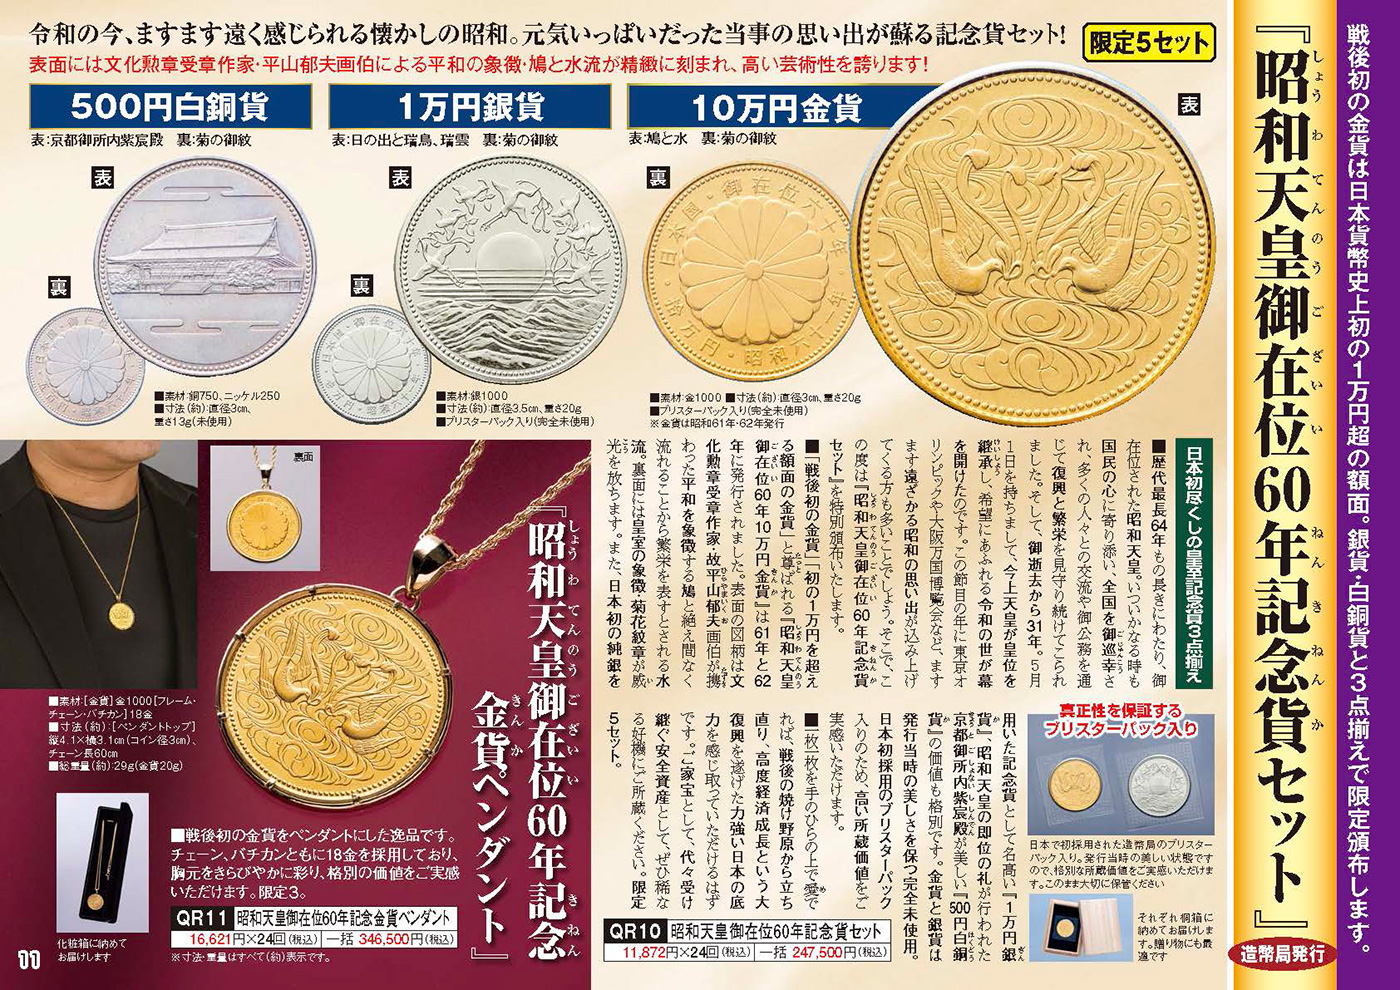 昭和天皇御在位60年記念硬貨 1万円+500円 - 美術